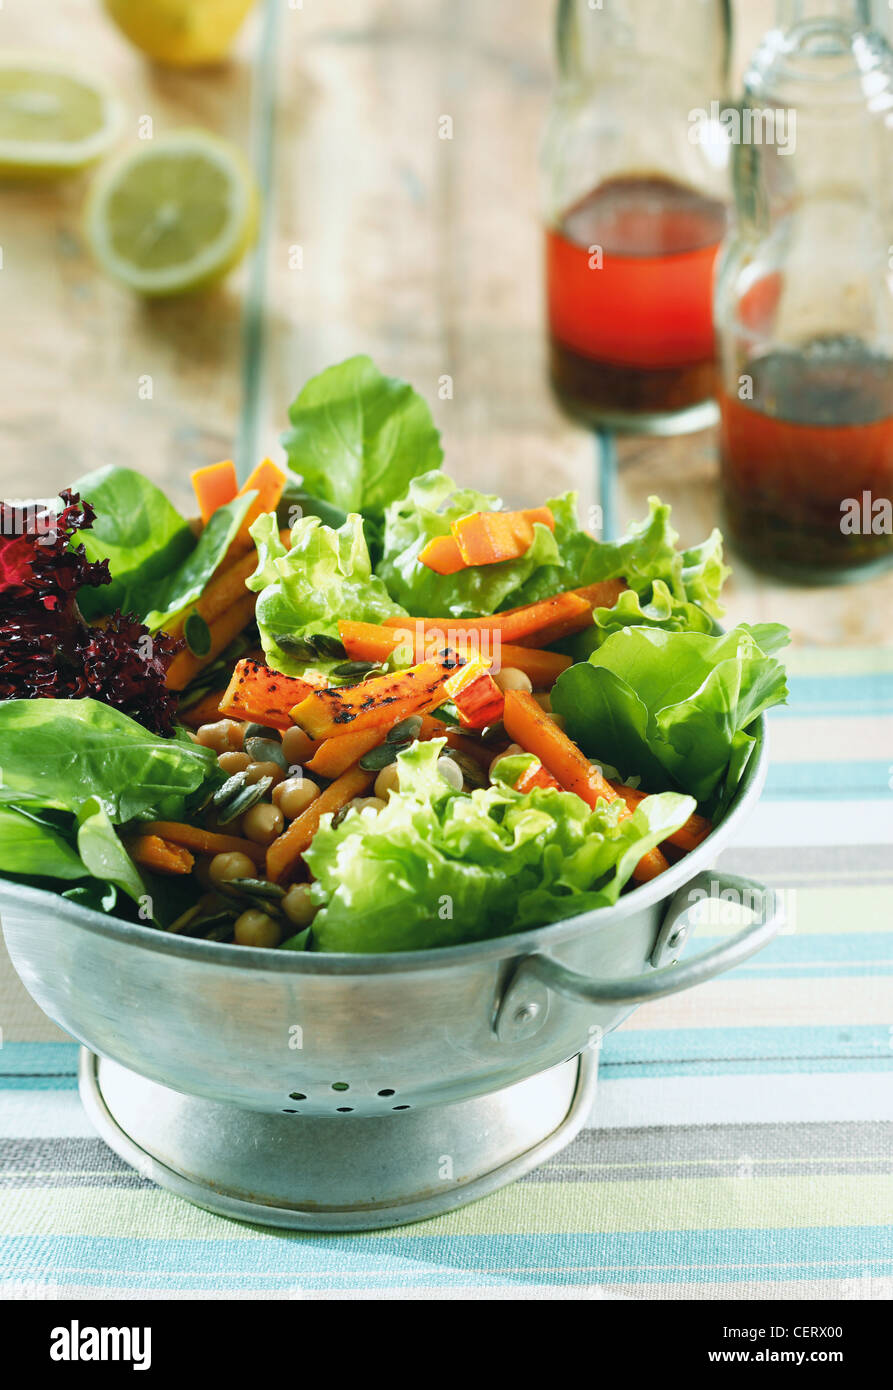 Mescolare e abbinare insalate creare gustose varianti di base di insalata verde mantenendo una selezione di ingredienti e condimenti a portata di mano Foto Stock